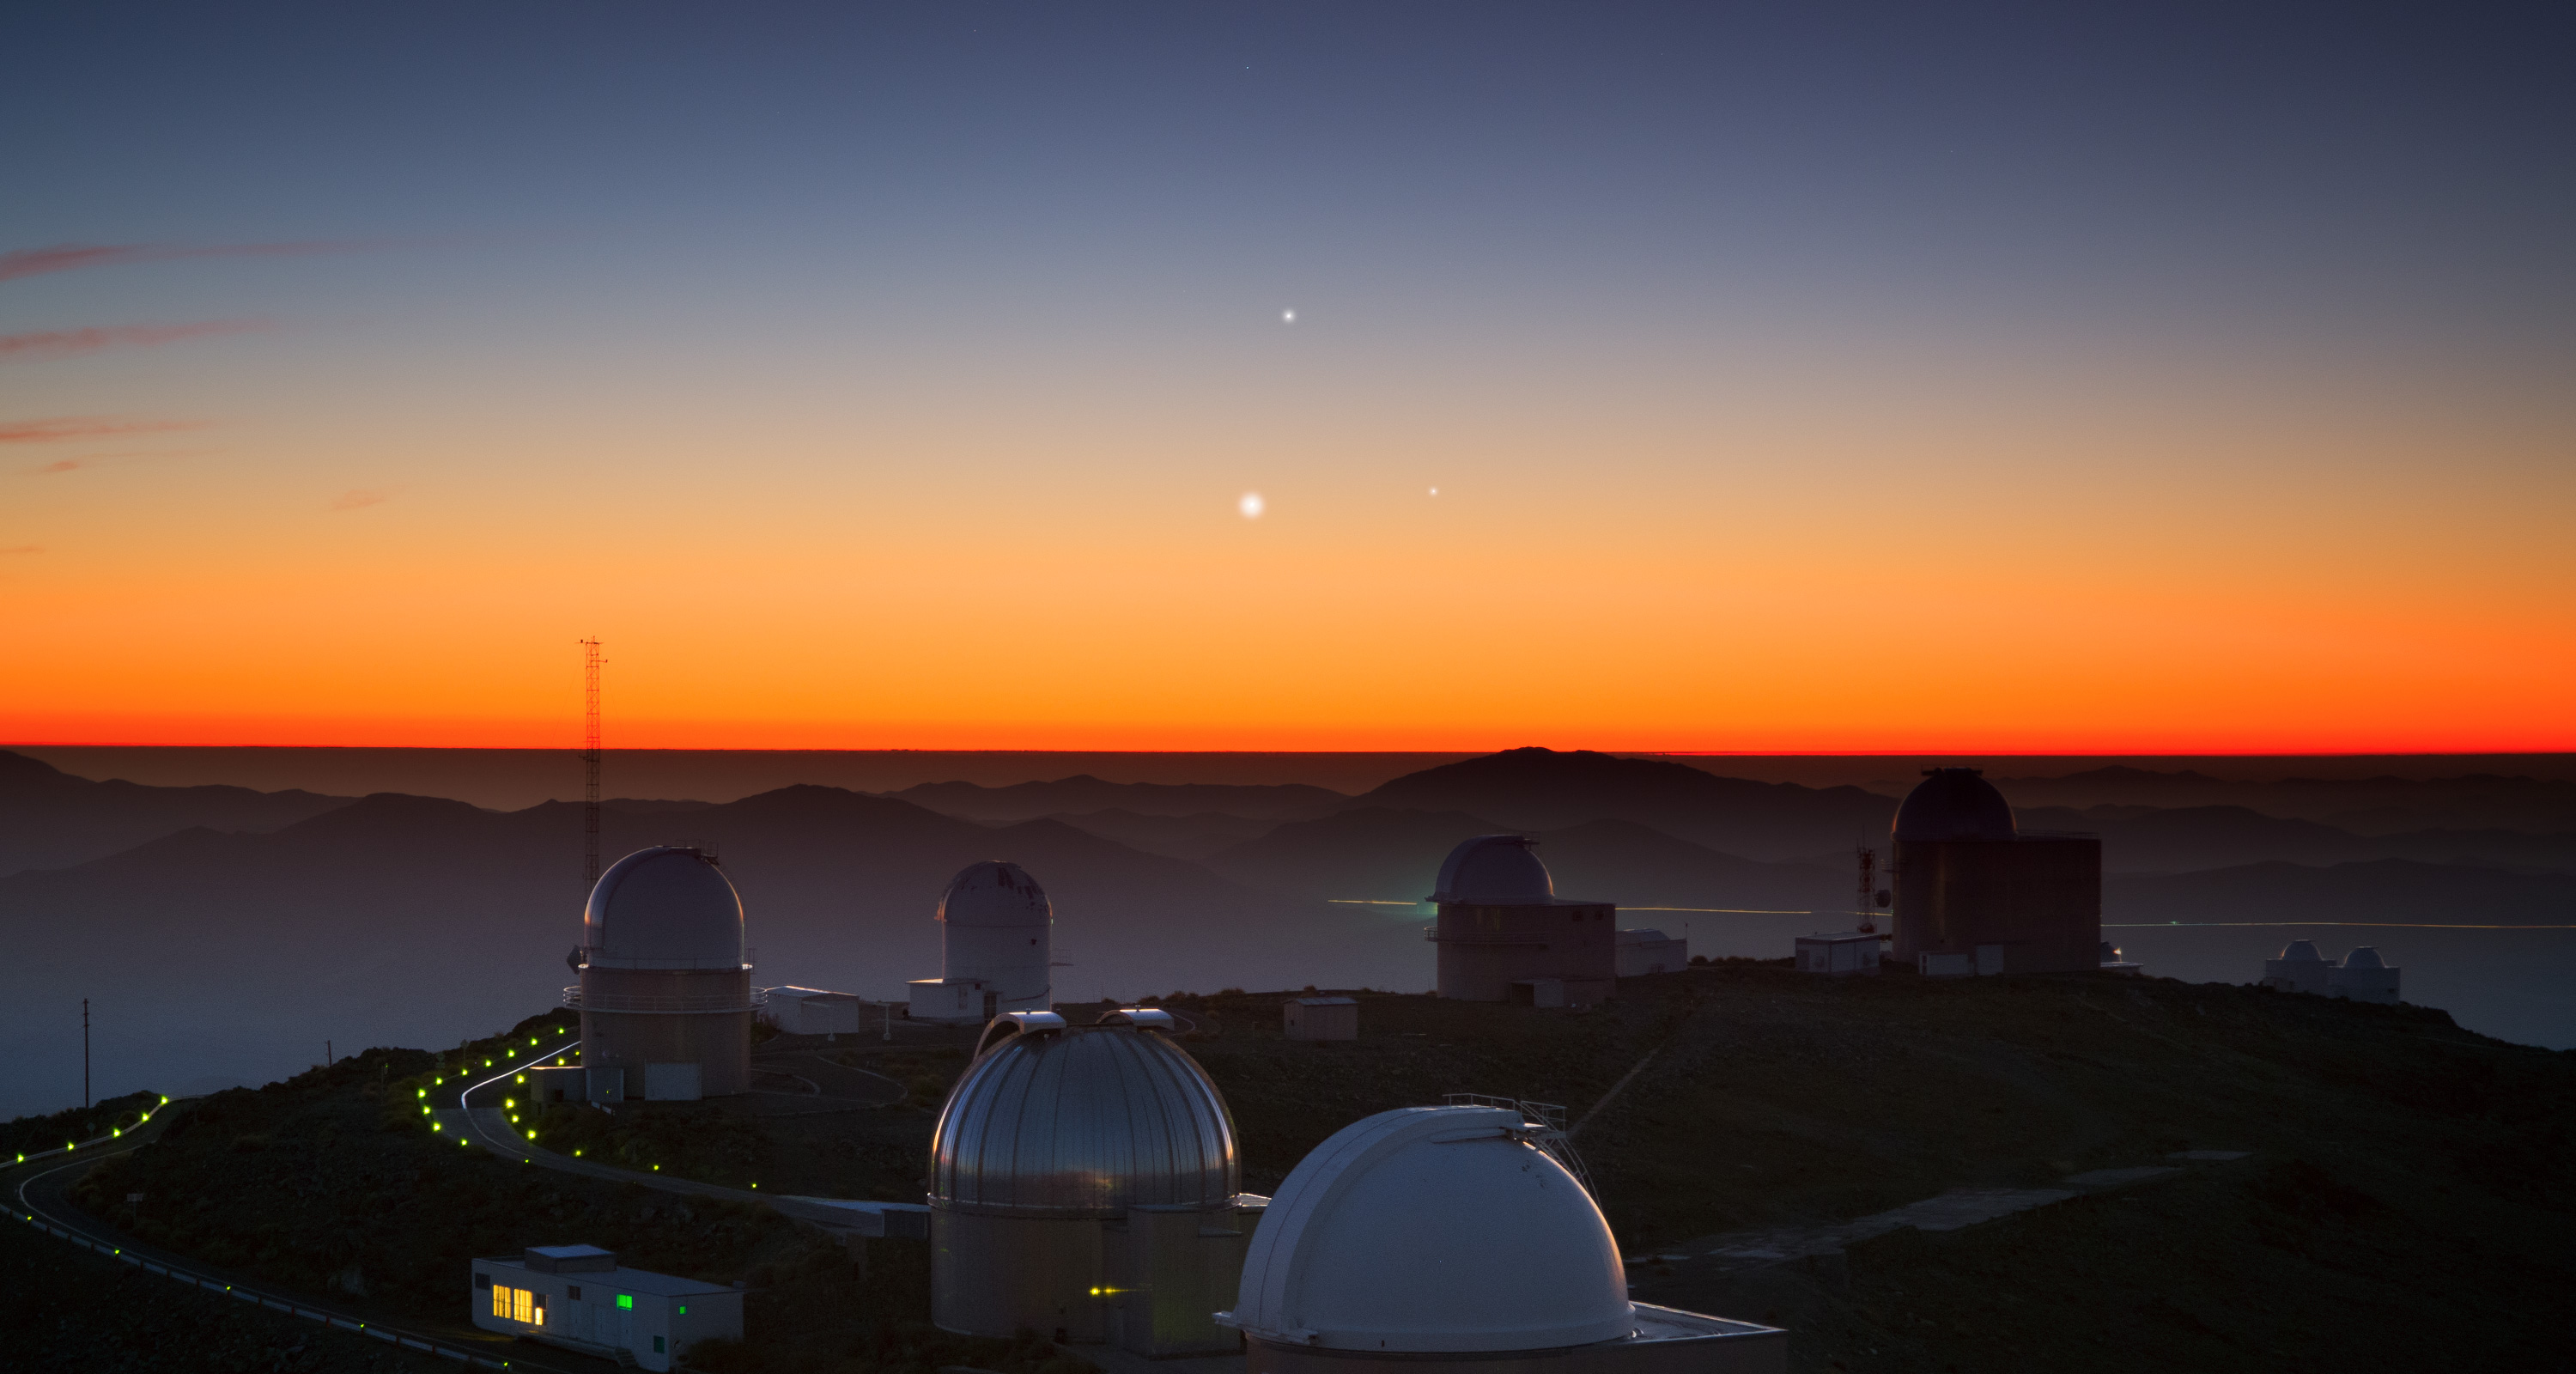 Alignment of three planets over La Silla observatorium